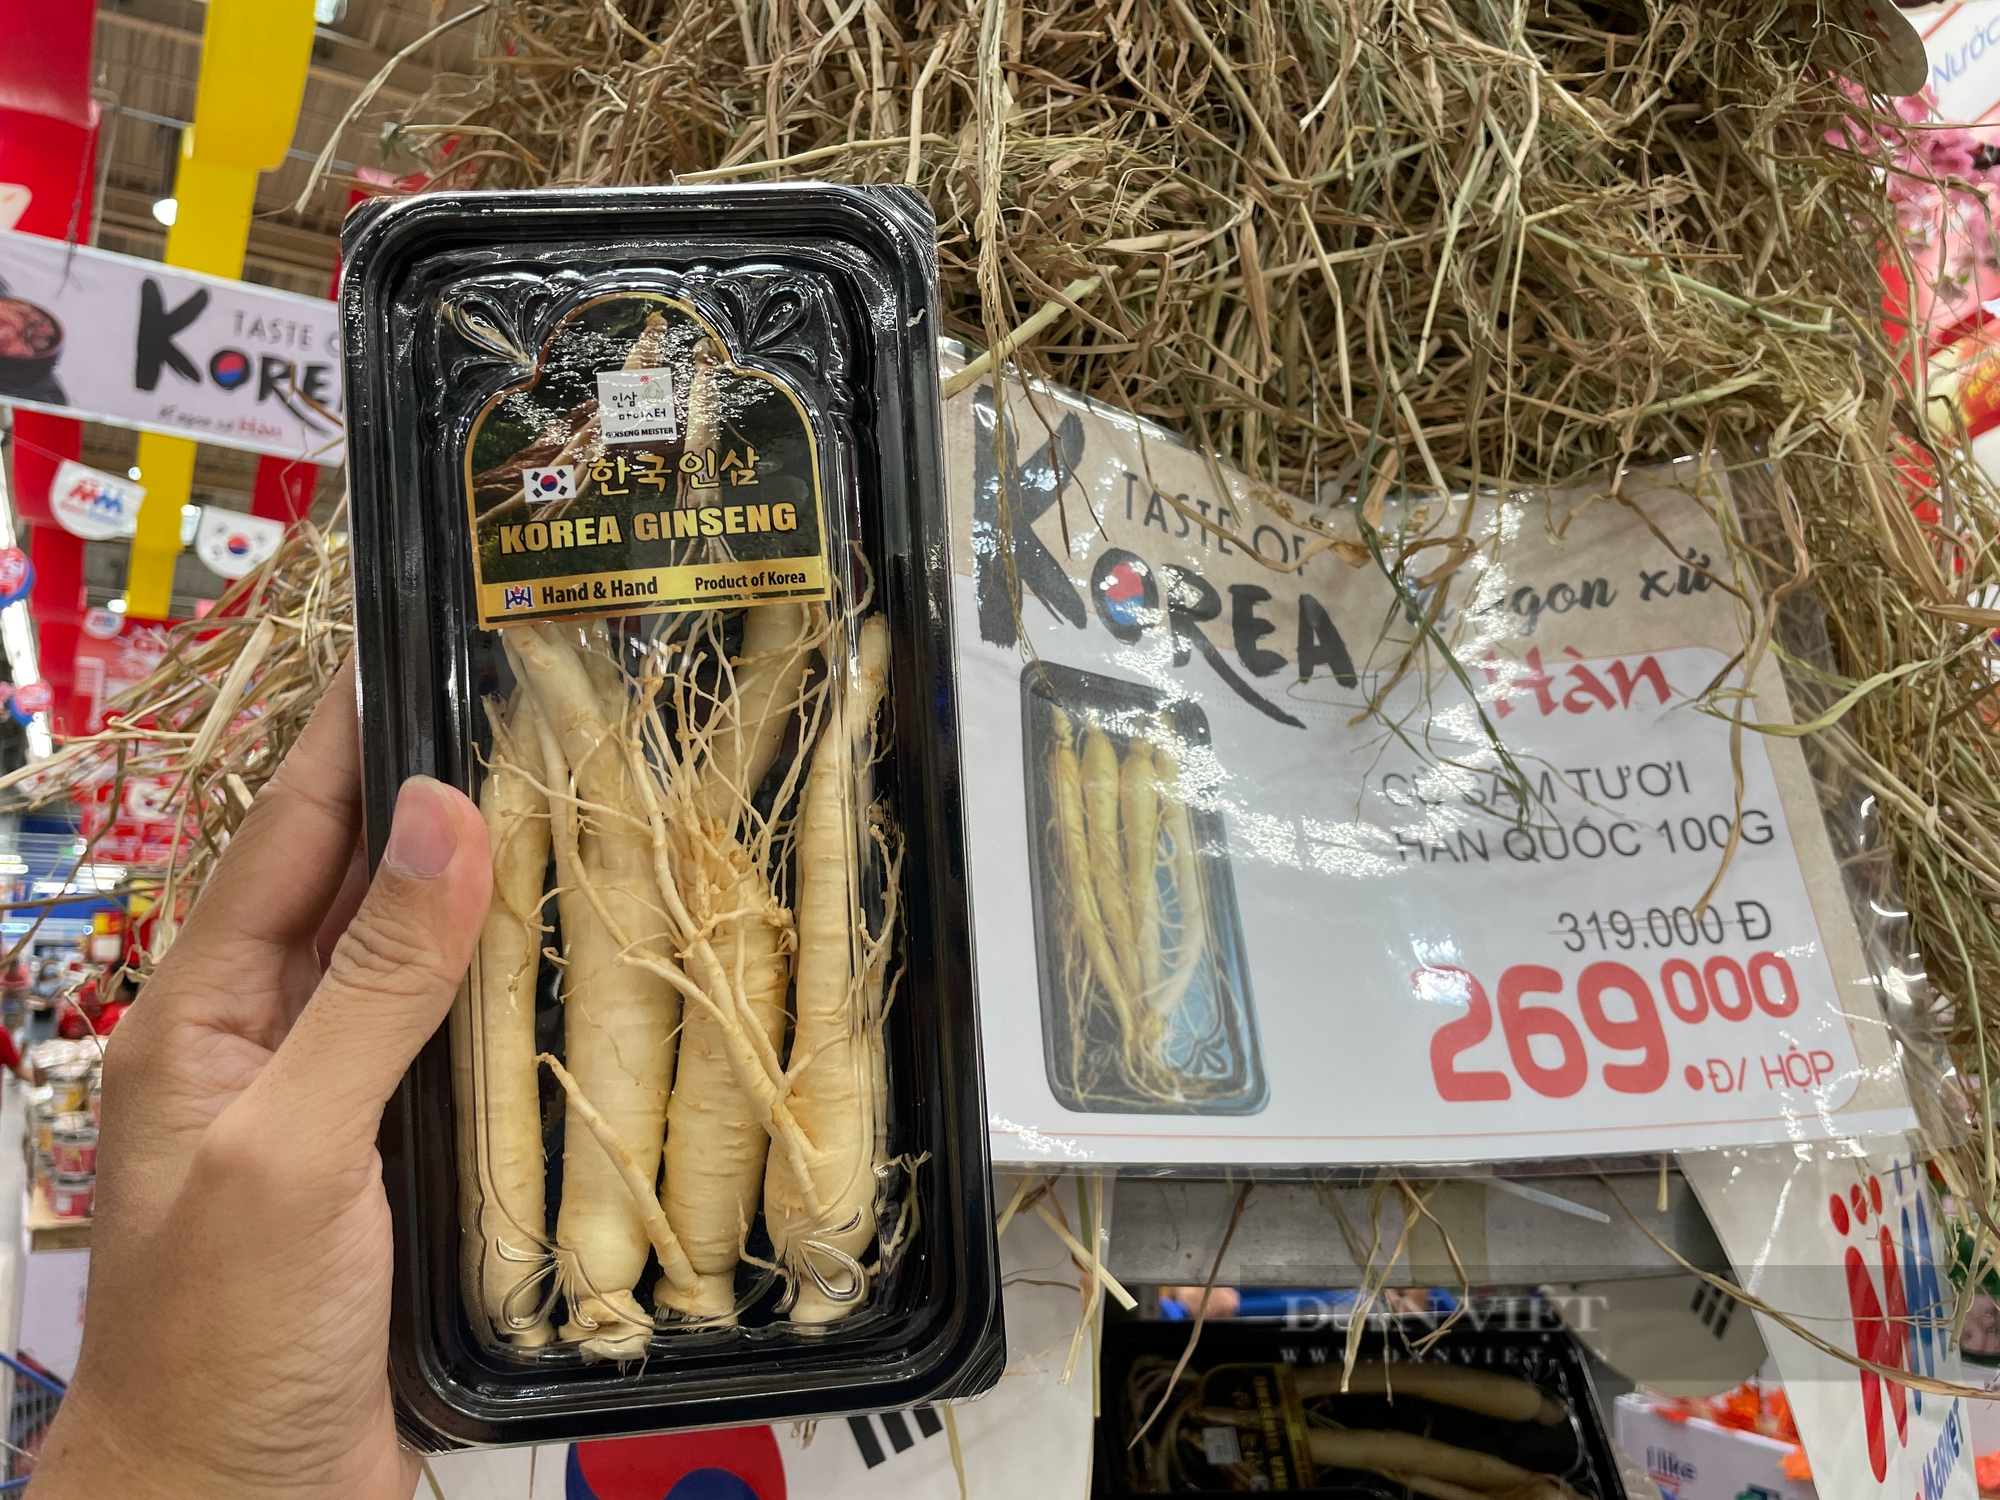 Người Sài Gòn bất ngờ với củ cải, sâm tươi Hàn Quốc trên kệ siêu thị, hàng “hot” lại giảm giá sốc - Ảnh 1.